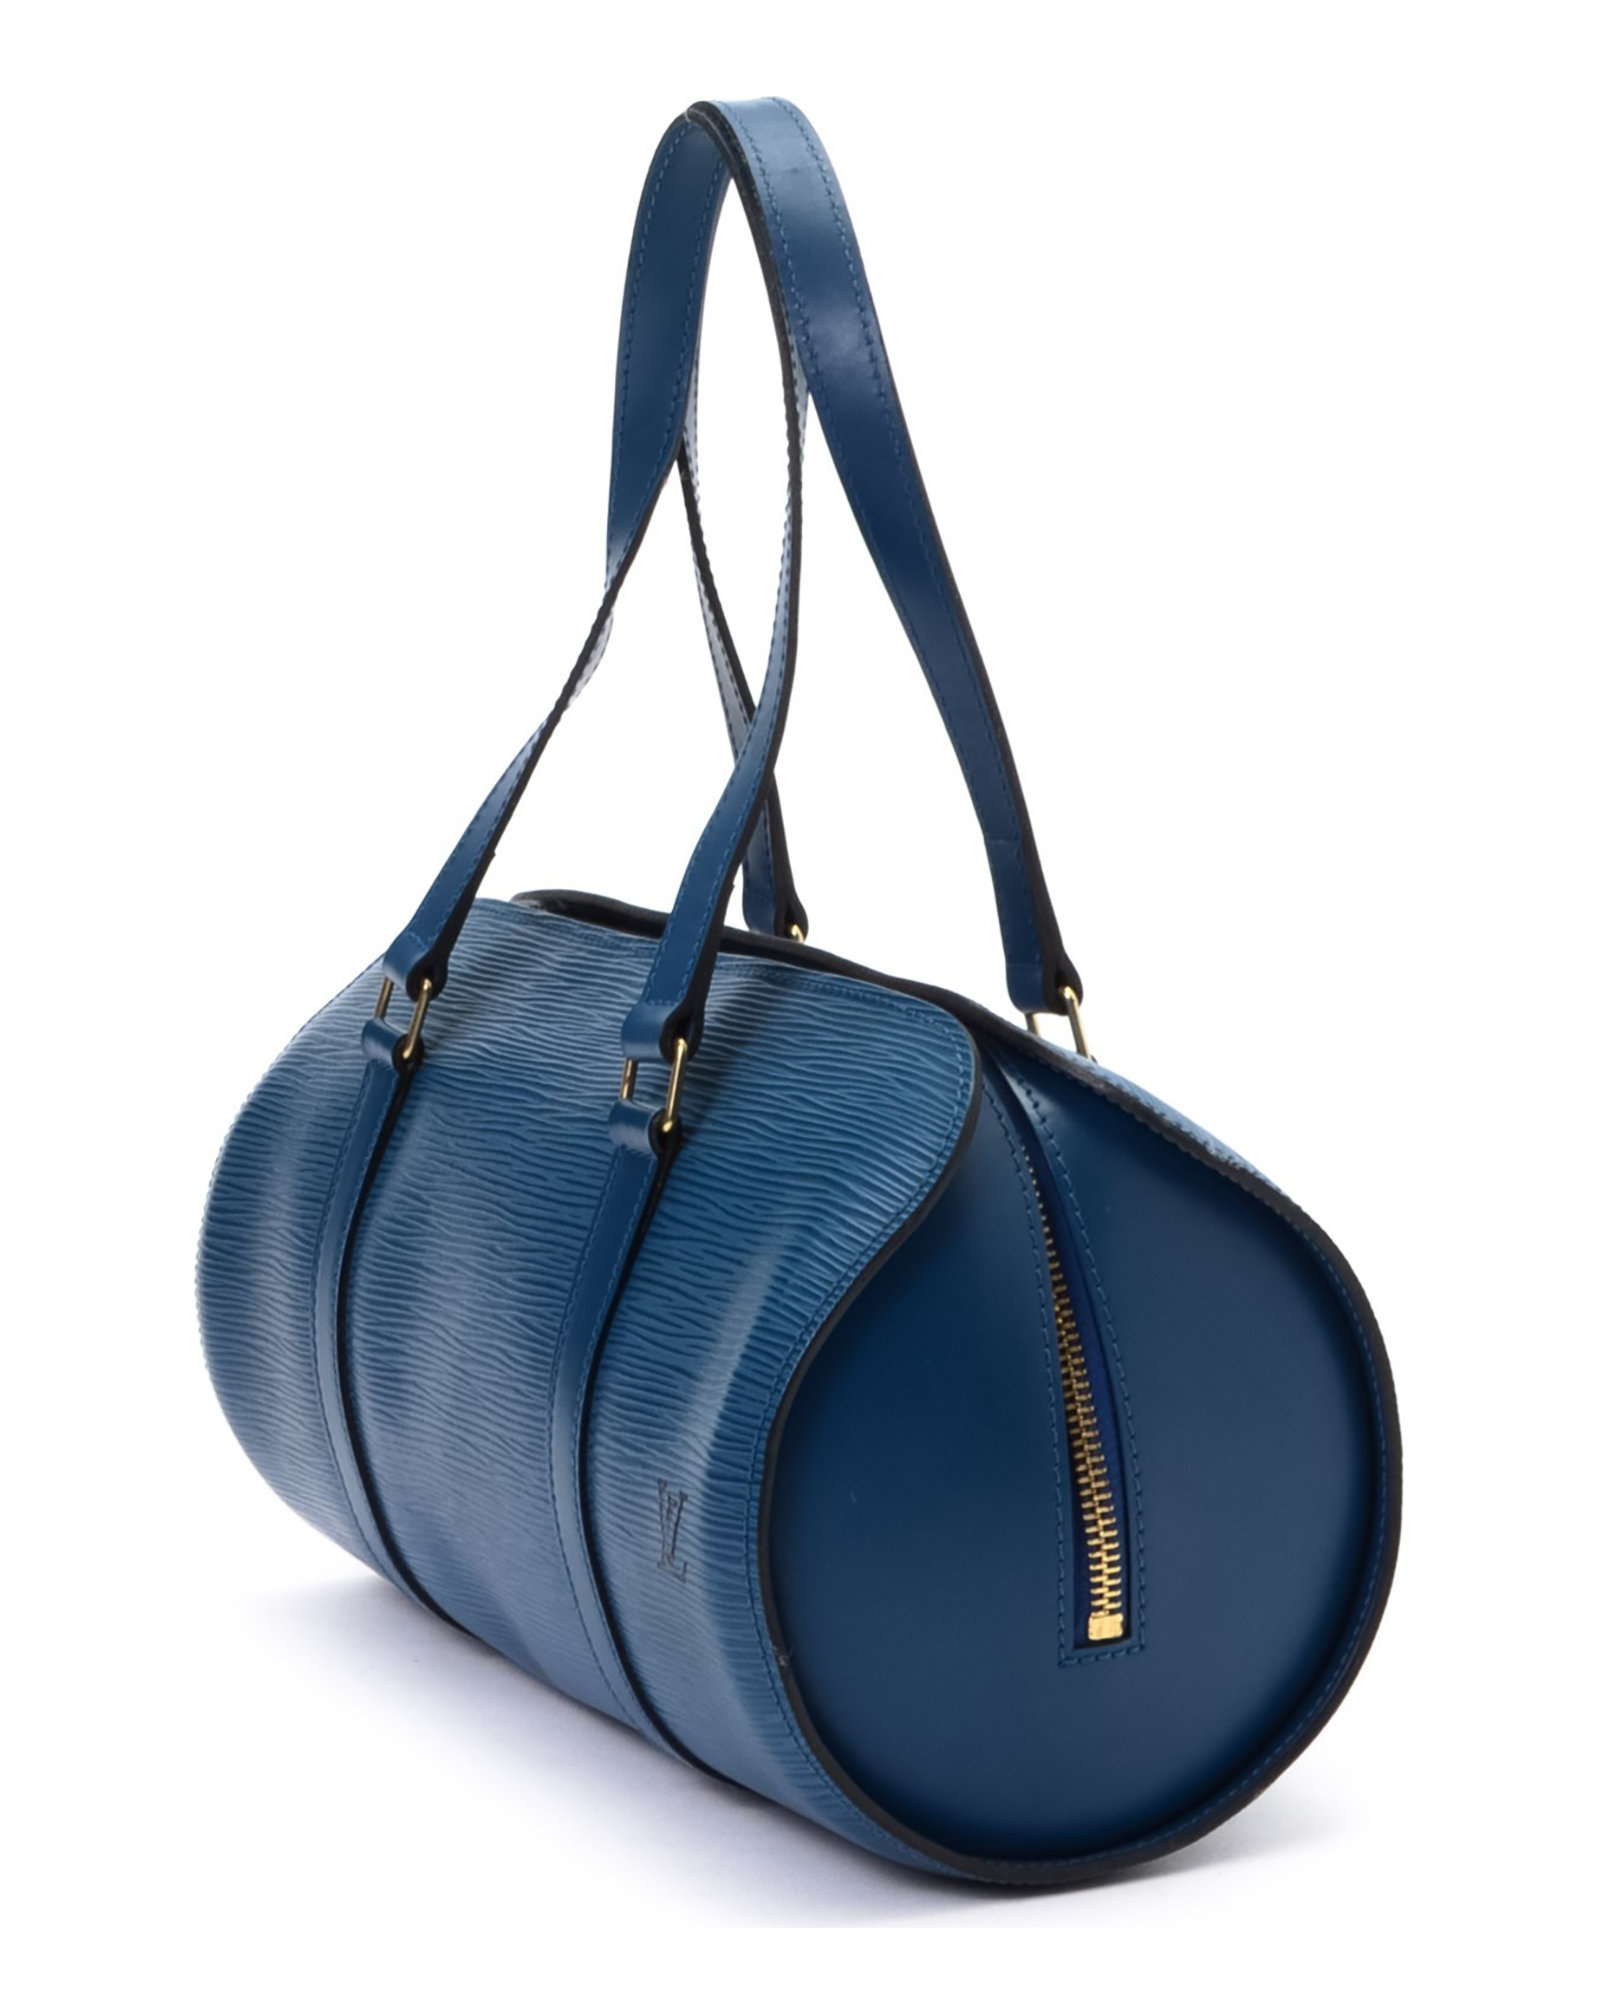 Néonoé leather handbag Louis Vuitton Blue in Leather - 32169806